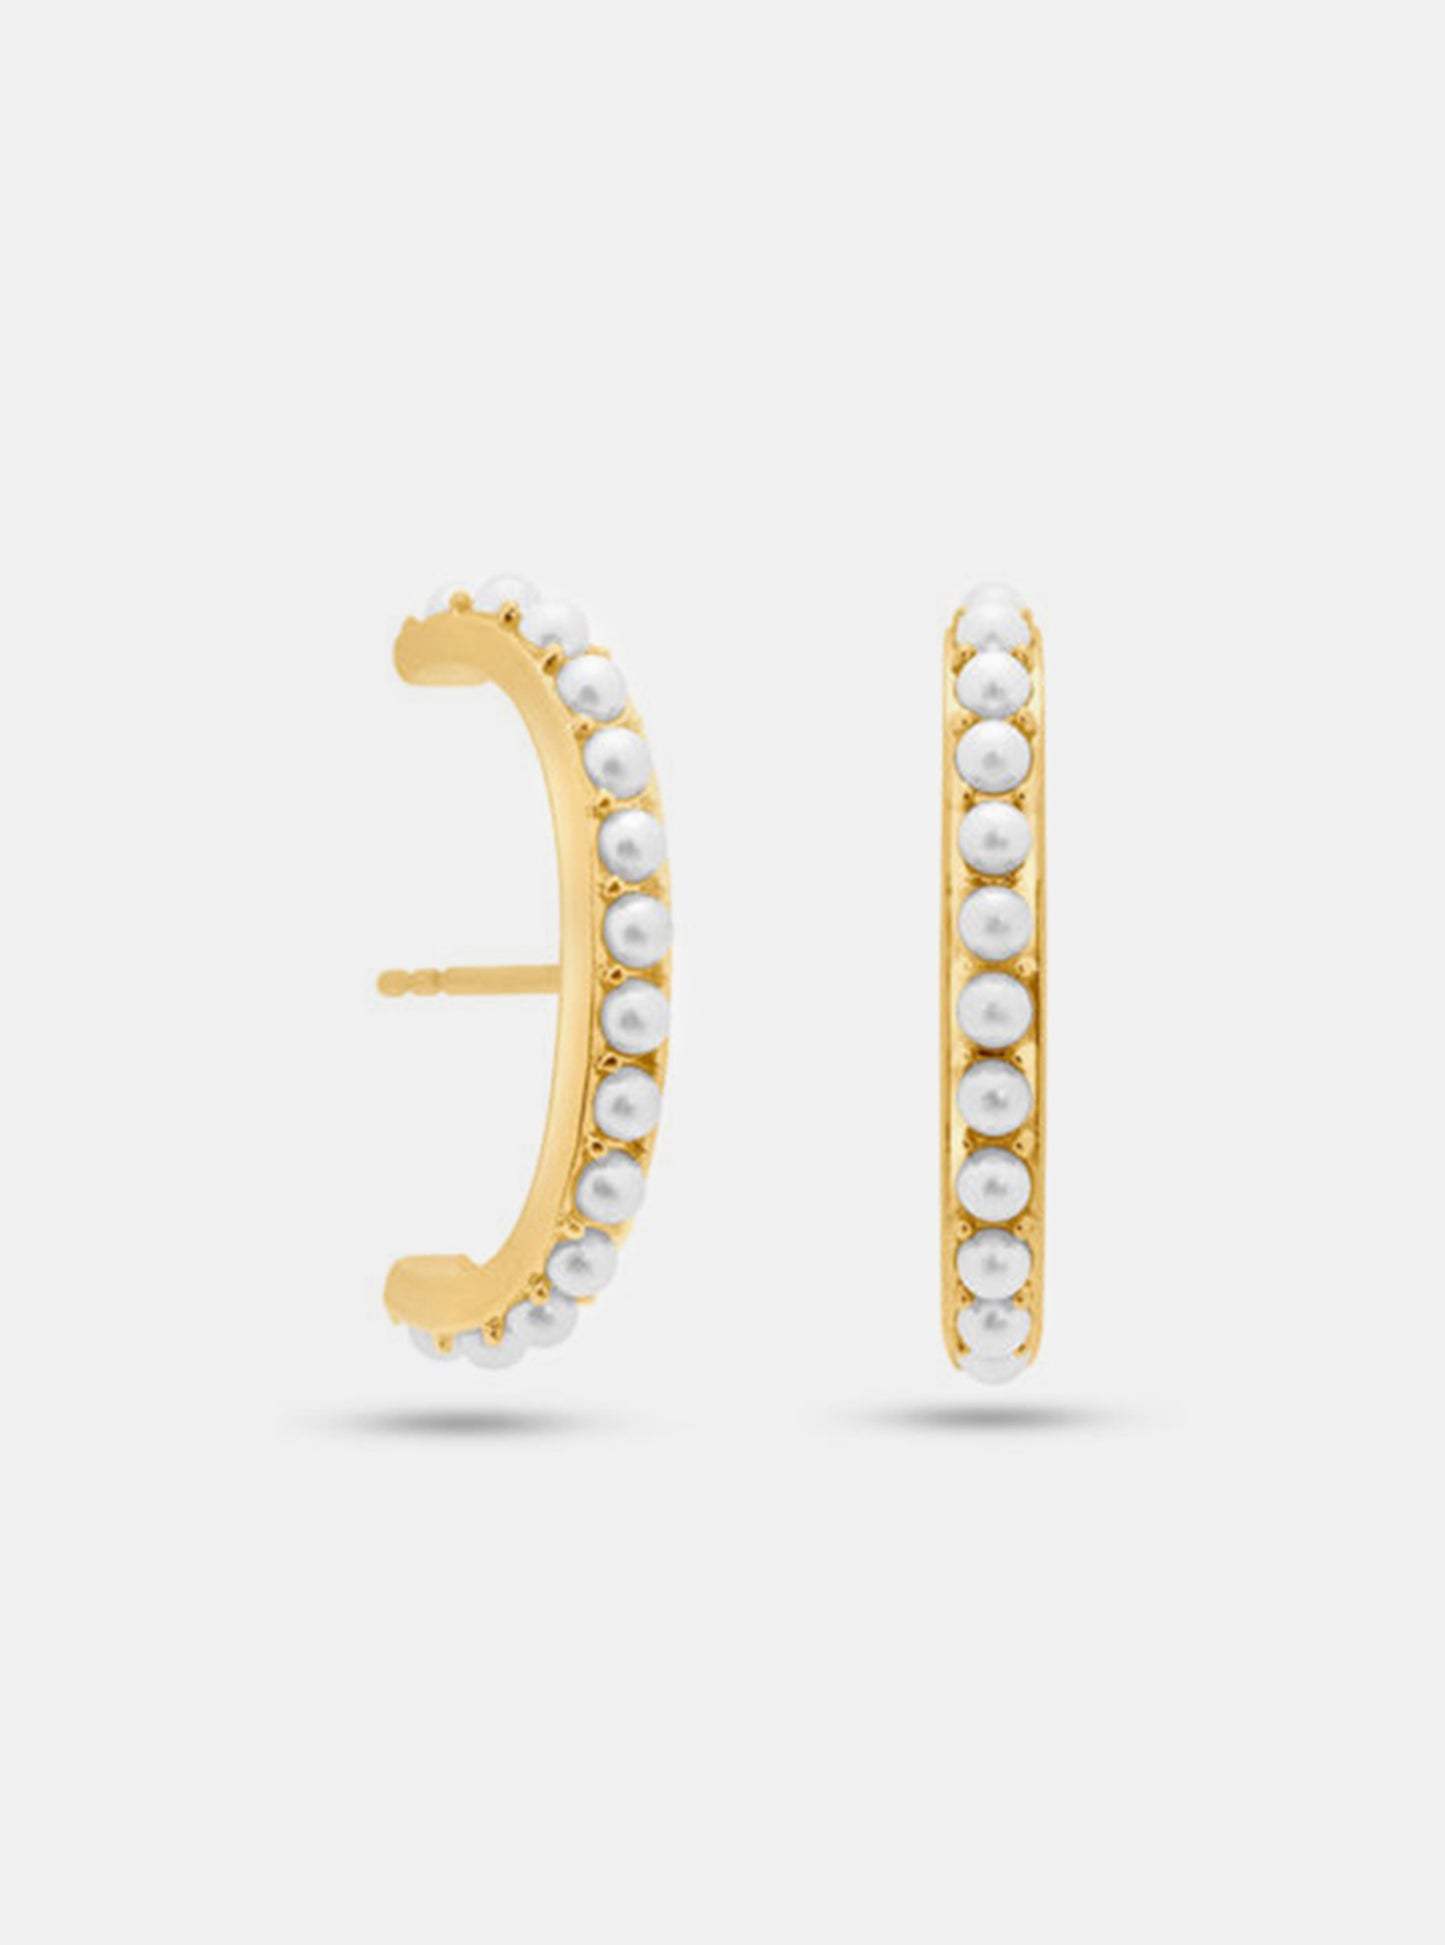 Suspender Earrings with Pearls